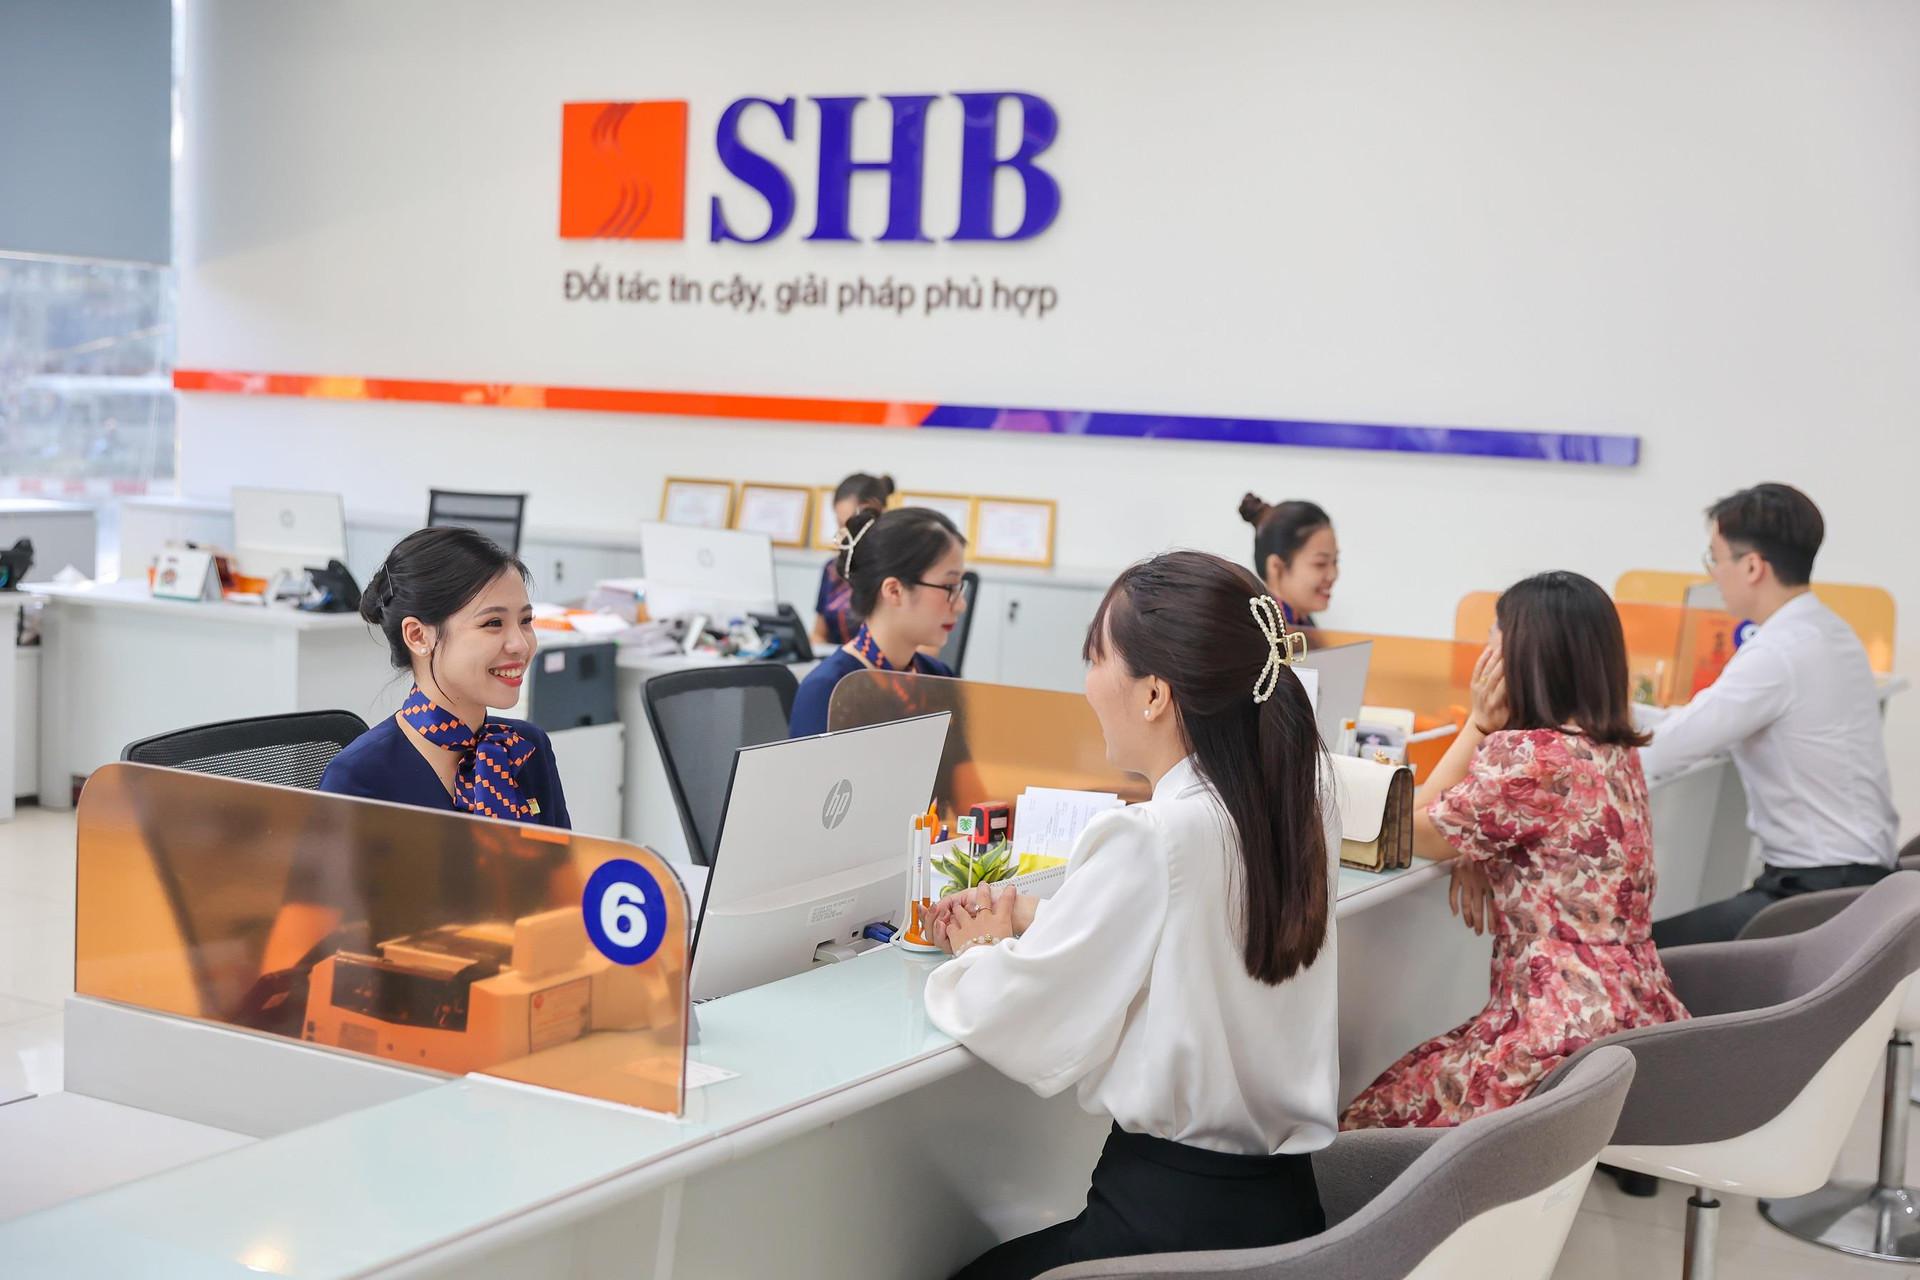 SHB chào bán cổ phiếu cho nhân viên với giá 10.000 đồng/cp, rẻ hơn thị giá 500 đồng nhưng hạn chế chuyển nhượng 18 tháng